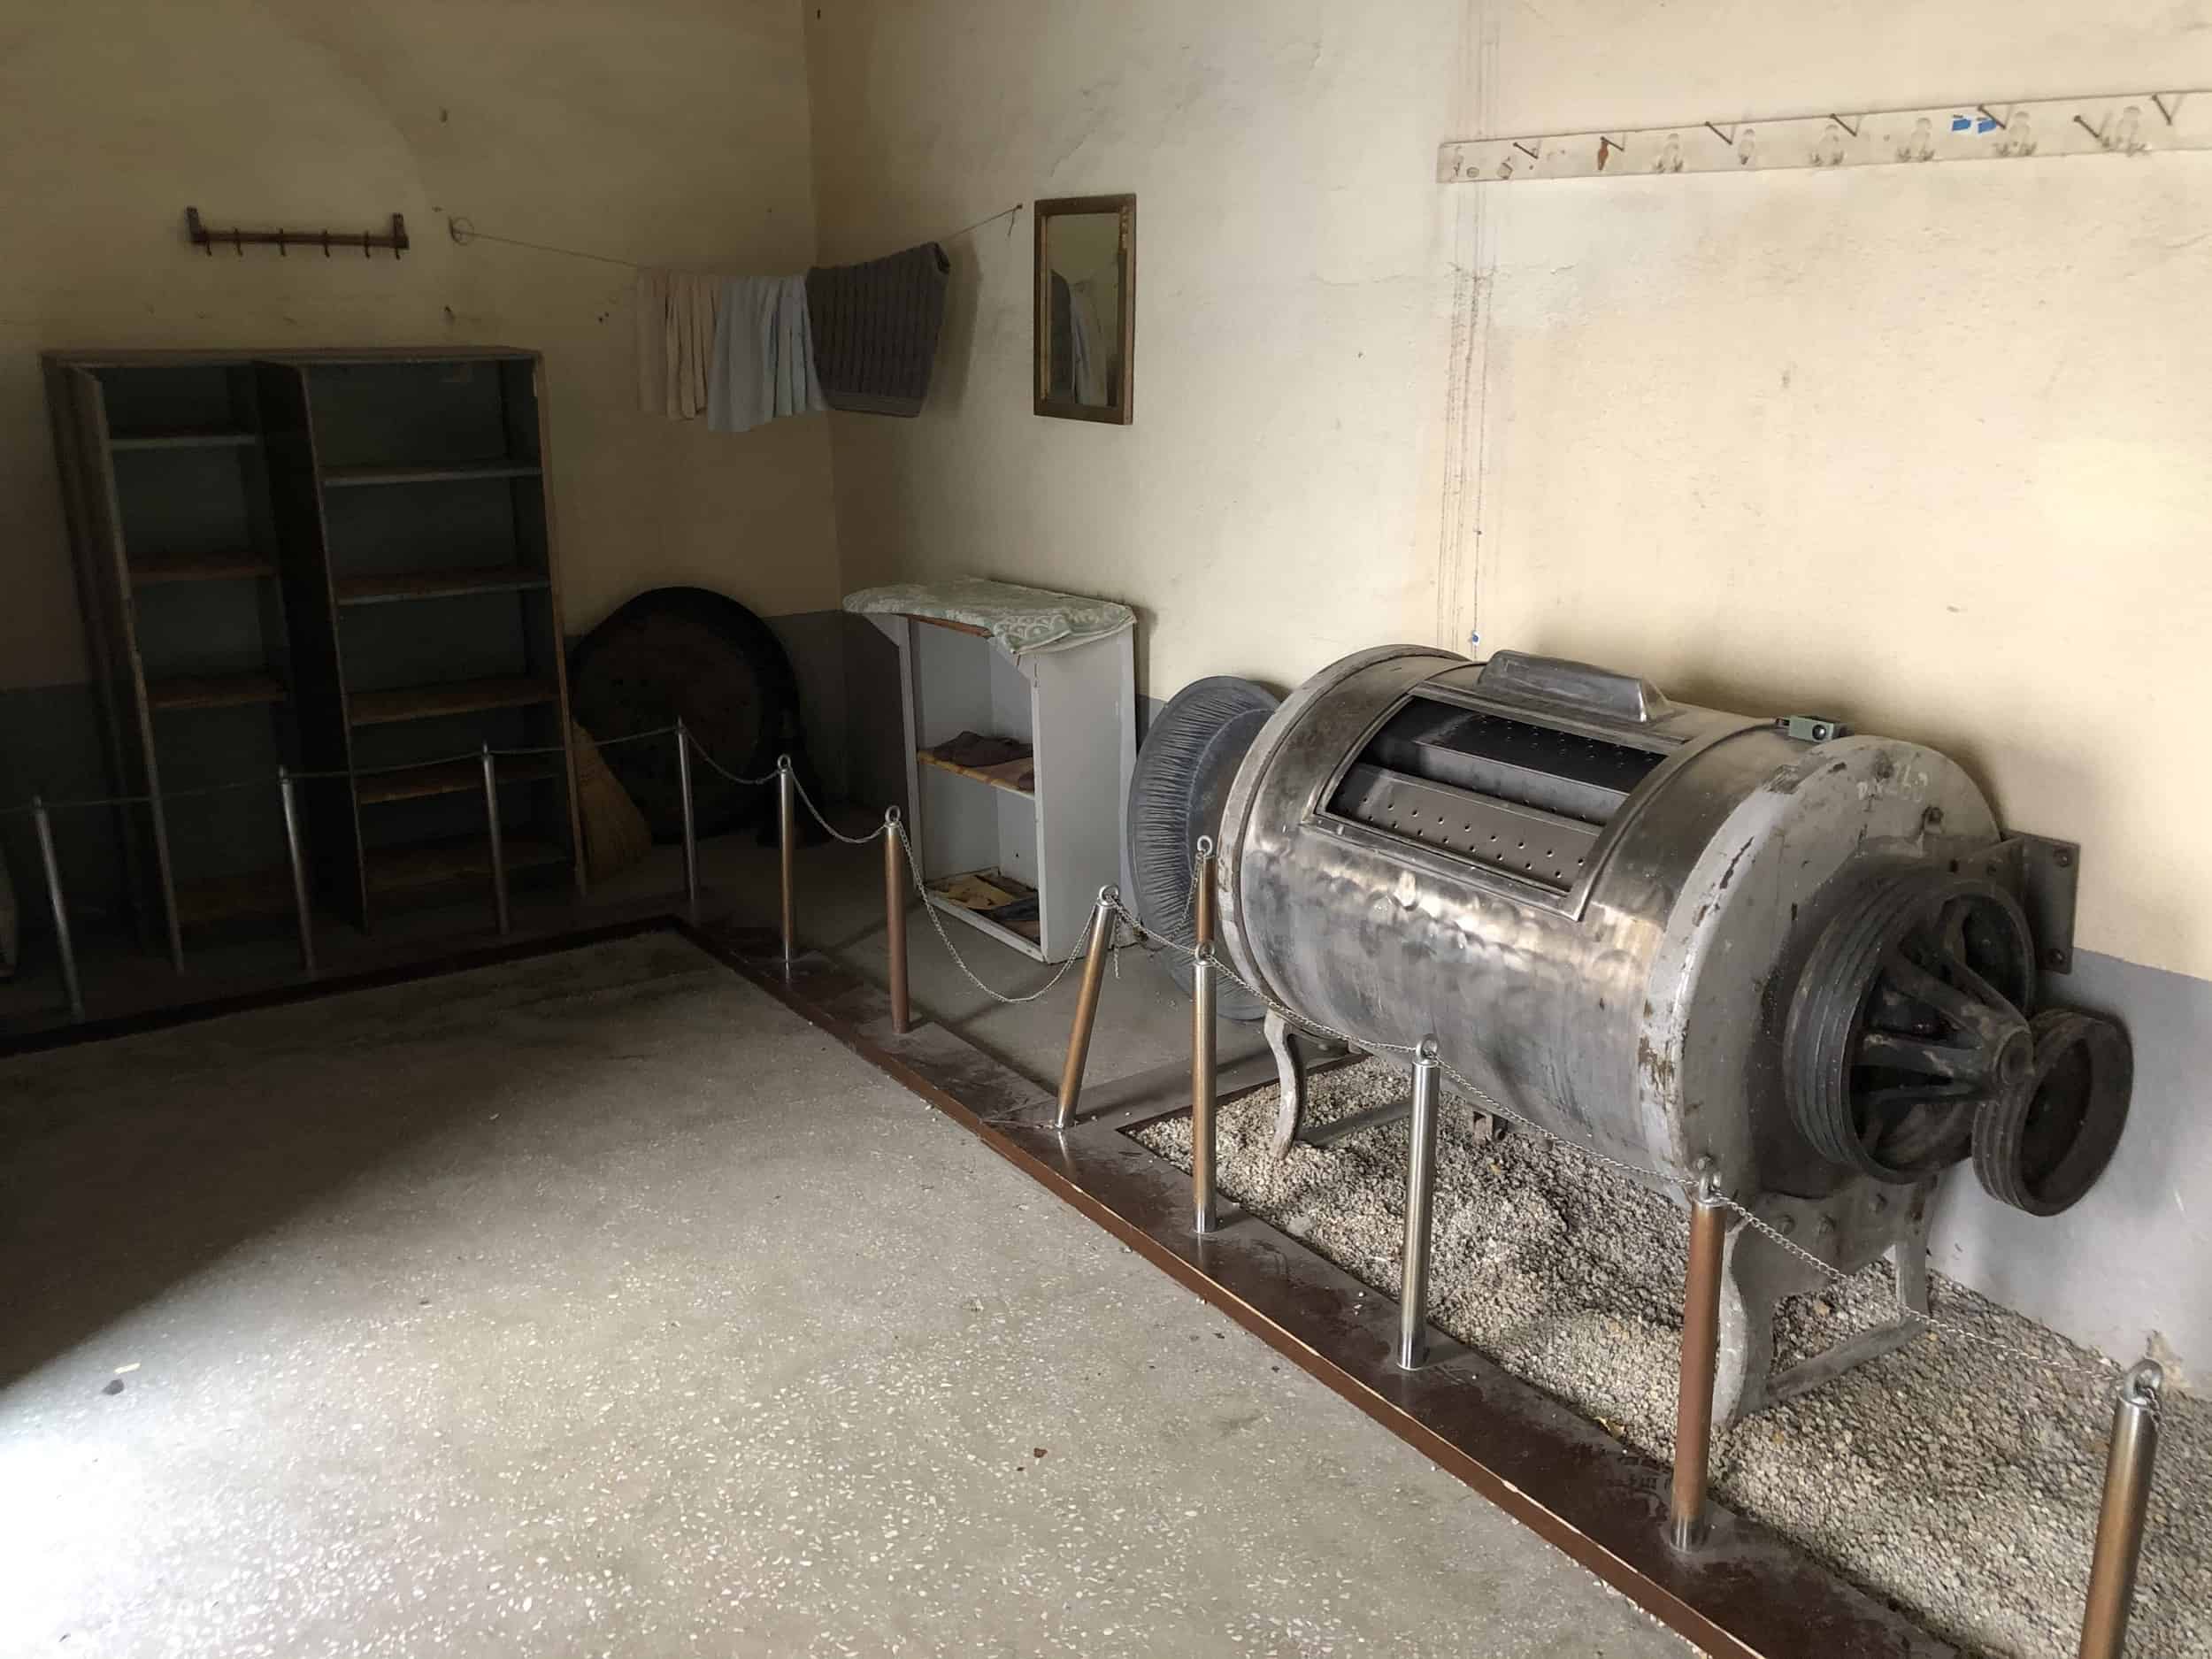 Laundry room at Ulucanlar Prison in Ankara, Turkey